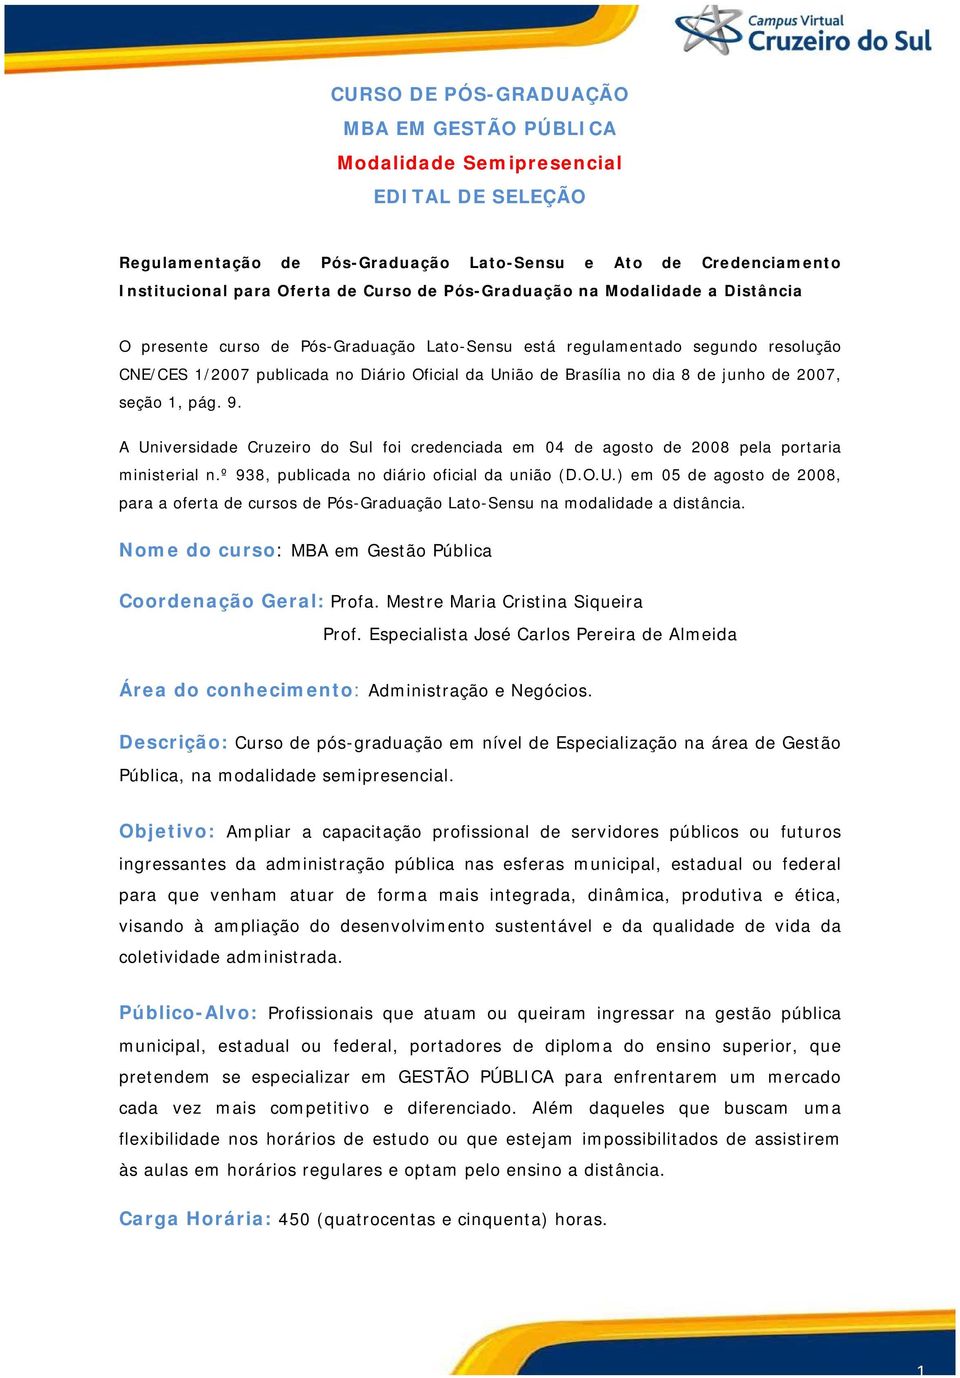 junho de 2007, seção 1, pág. 9. A Universidade Cruzeiro do Sul foi credenciada em 04 de agosto de 2008 pela portaria ministerial n.º 938, publicada no diário oficial da união (D.O.U.) em 05 de agosto de 2008, para a oferta de cursos de Pós-Graduação Lato-Sensu na modalidade a distância.